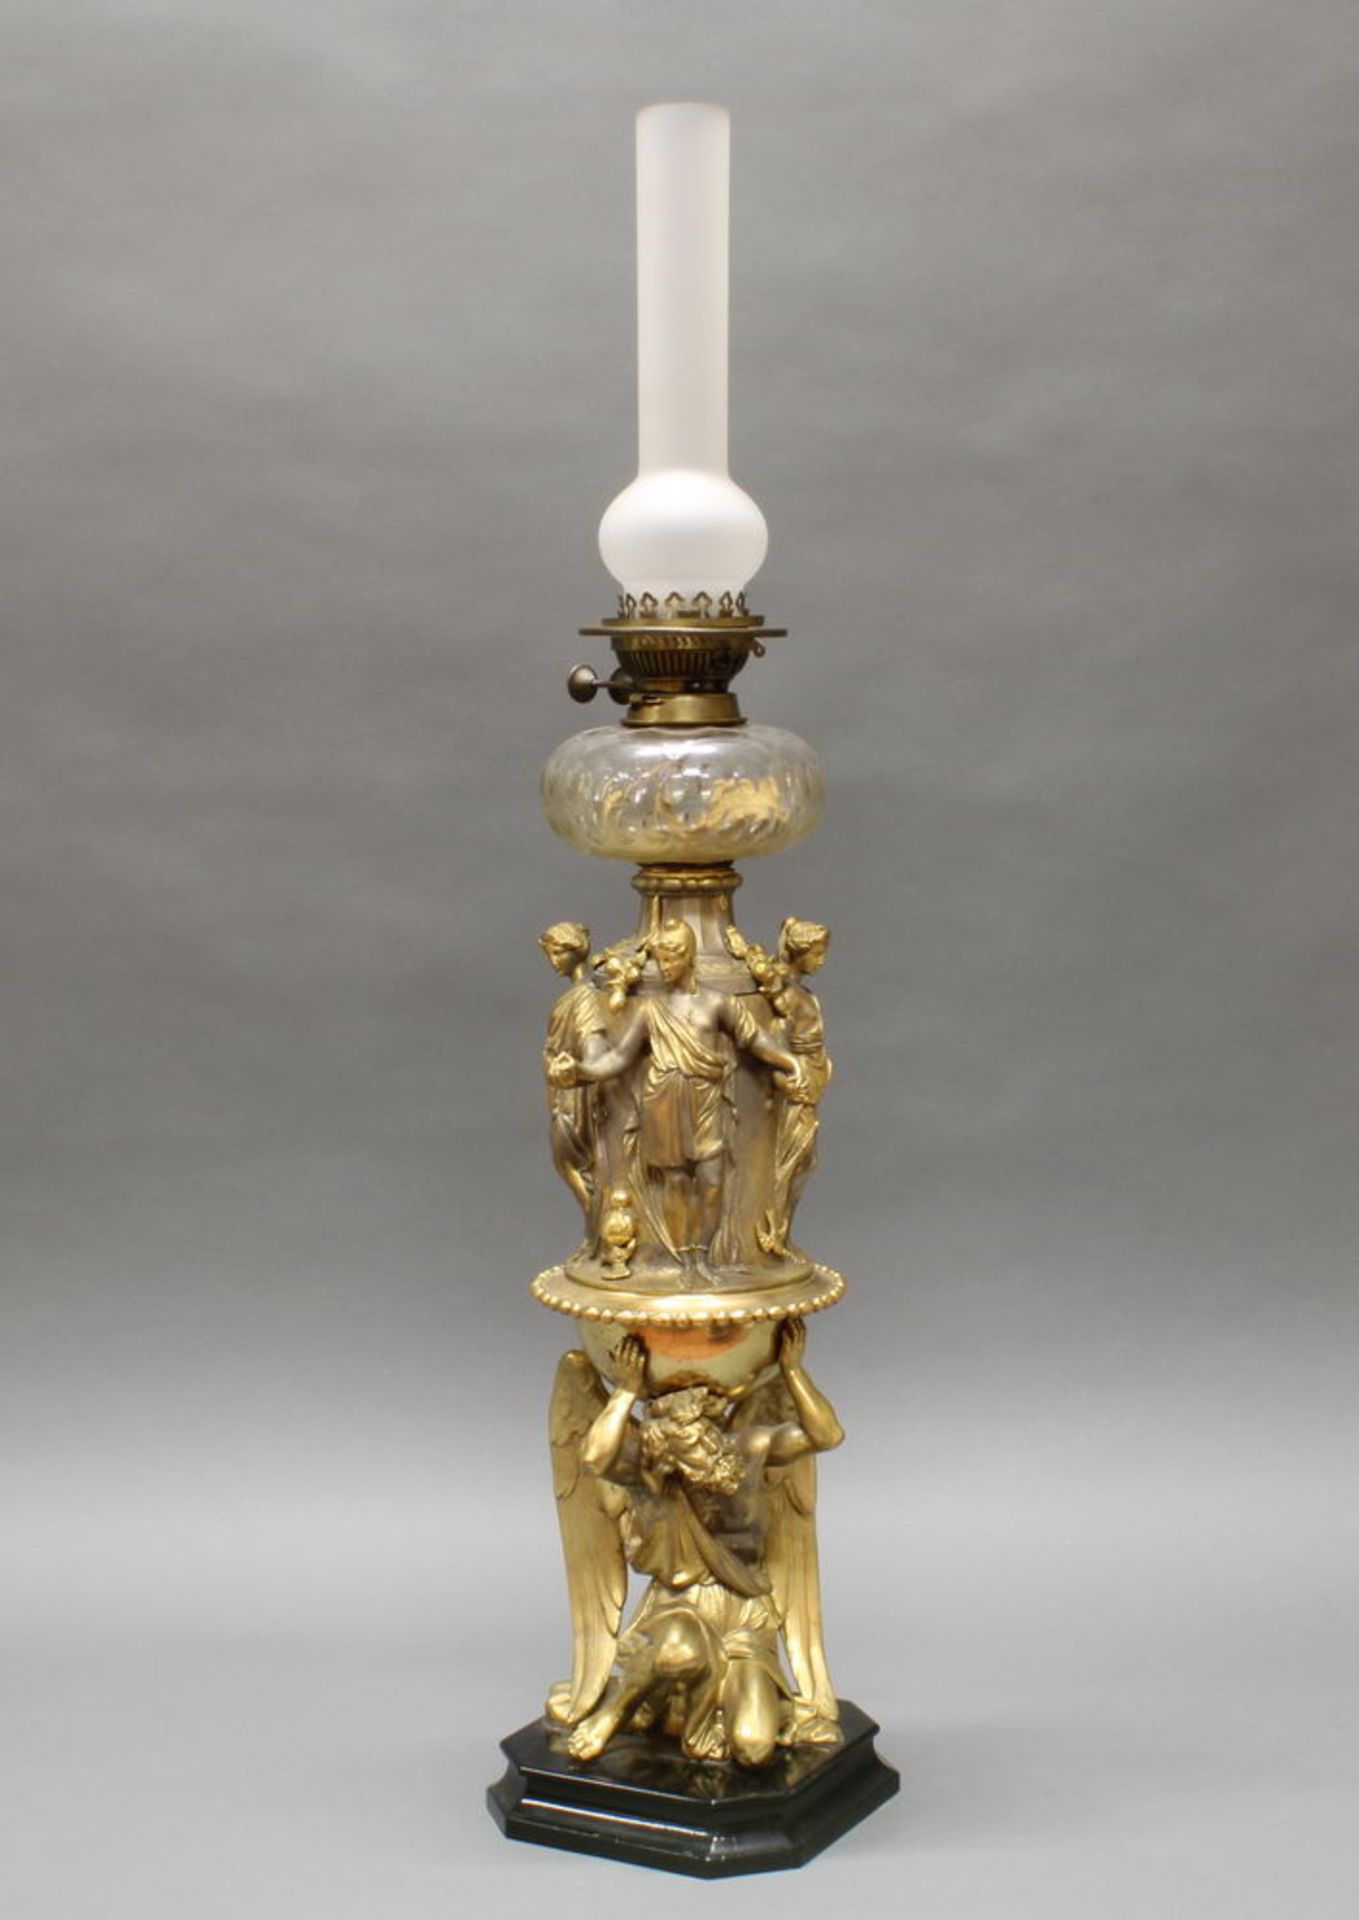 Petroleumlampe, "Chronos", Ende 19. Jh., Metallguss, goldbronziert, 93.5 cm hoch, berieben, Alter